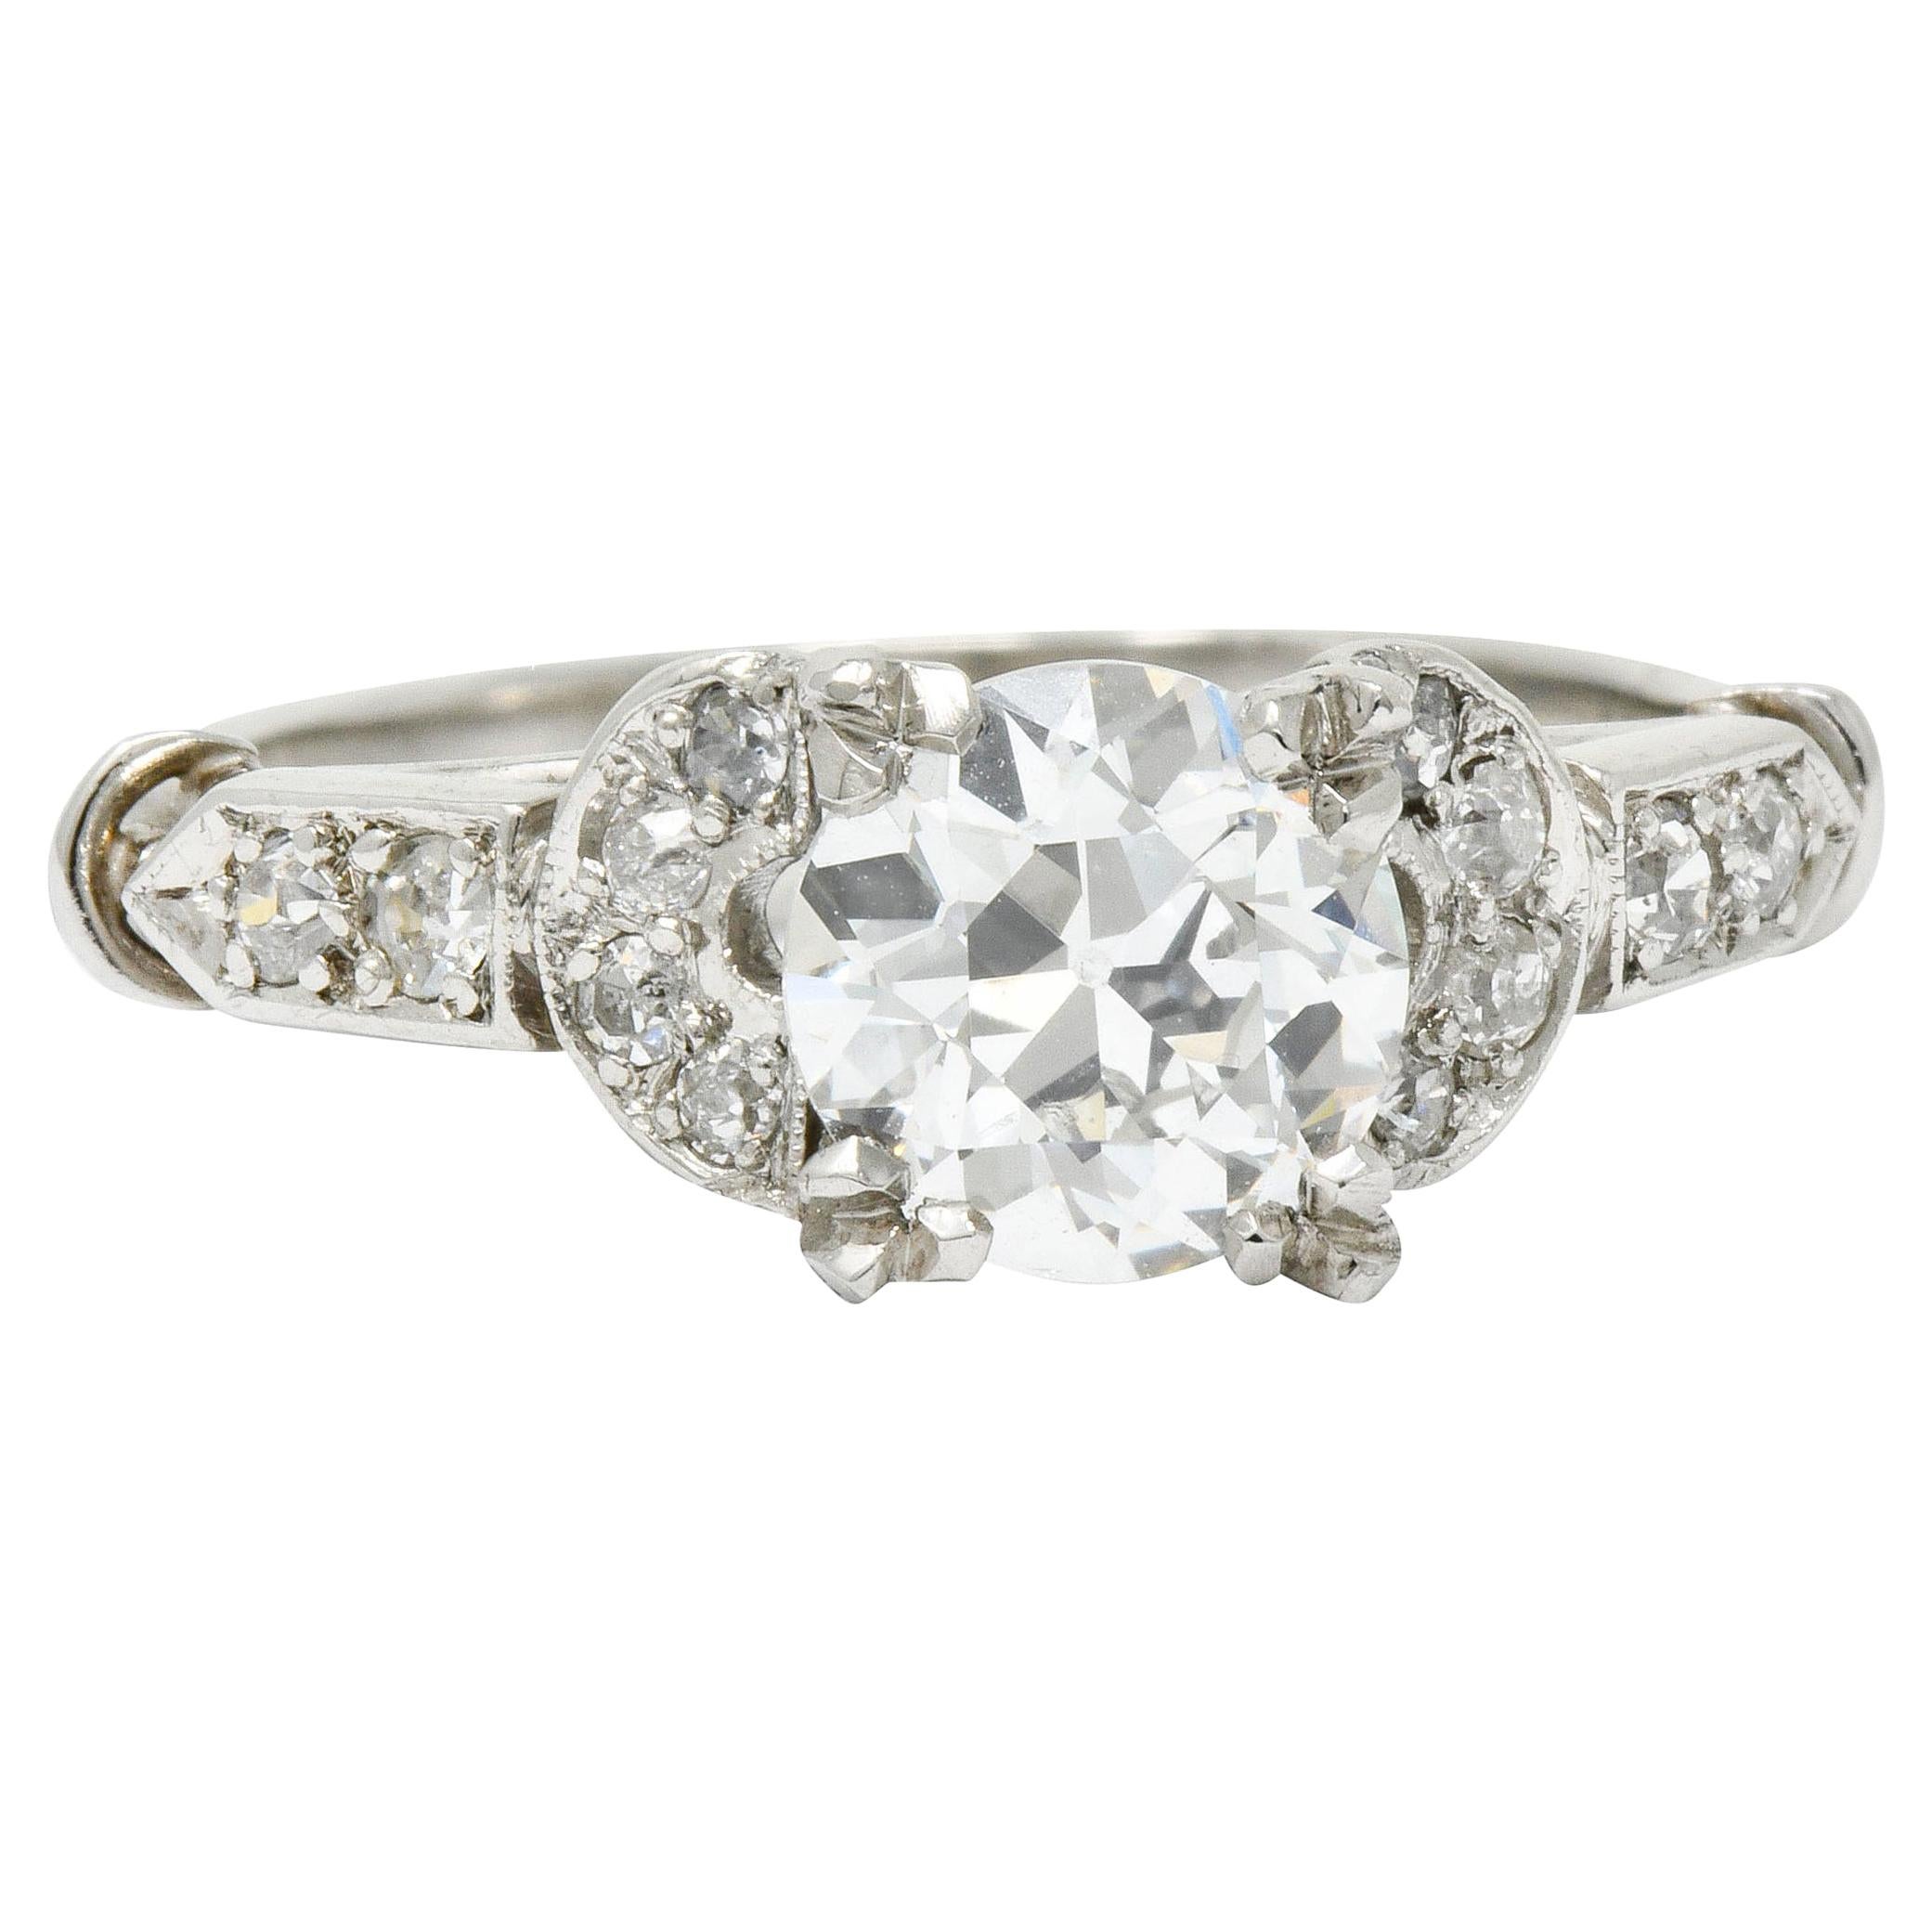 Exquisite Art Deco 1.39 Carats Diamond Platinum Engagement Ring GIA